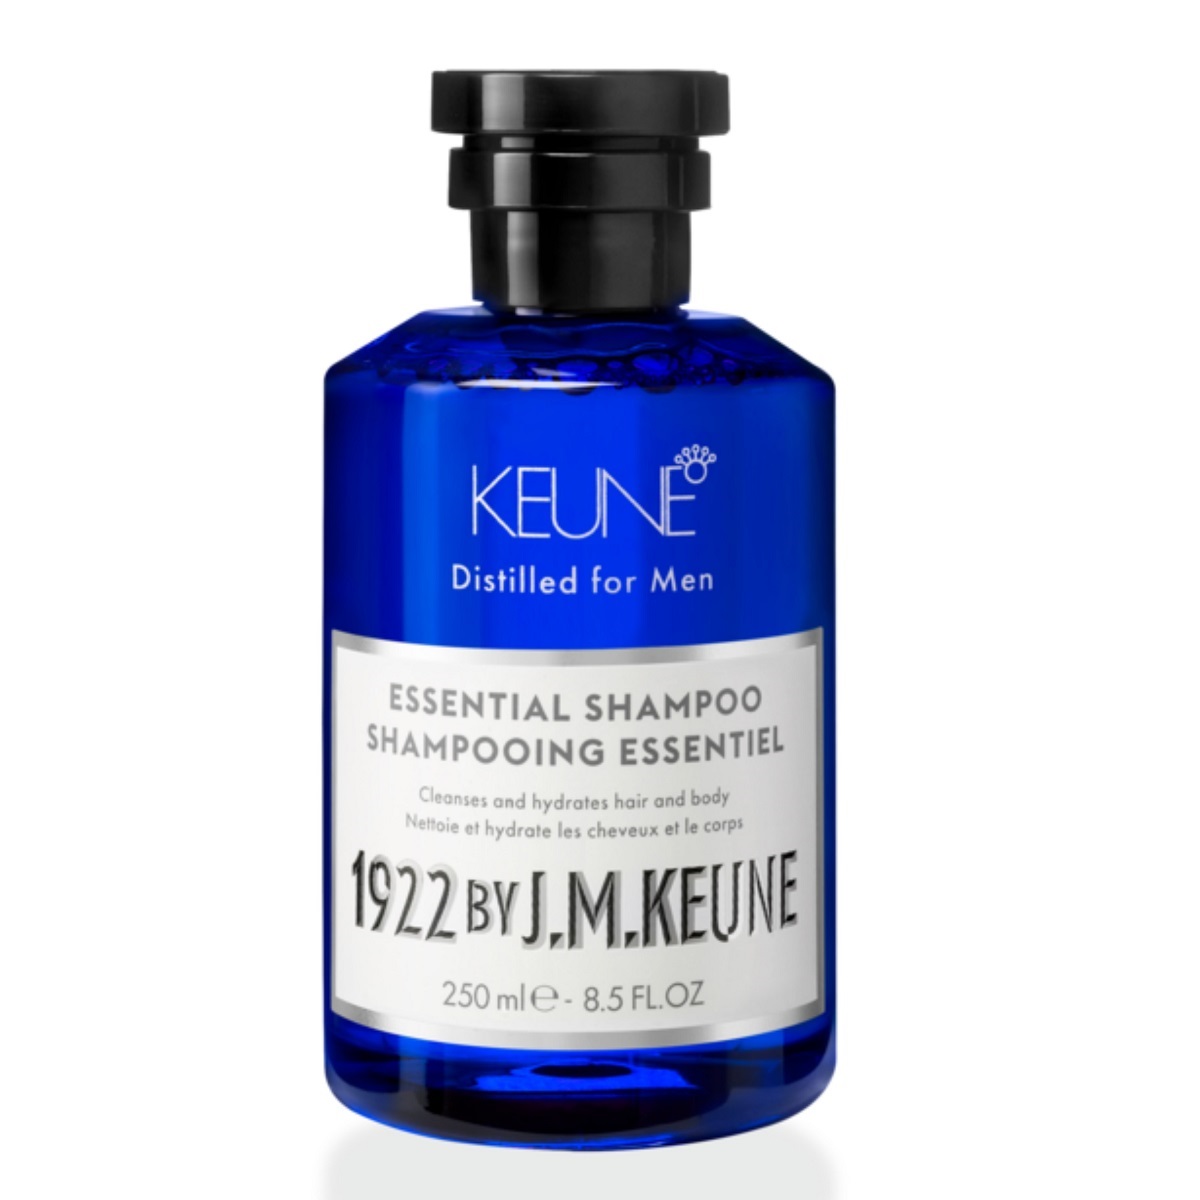 Keune Универсальный шампунь для волос и тела Essential Shampoo, 250 мл (Keune, 1922 by J.M. Keune) универсальный шампунь для волос и тела 1922 by j m keune essential shampoo шампунь 1000мл